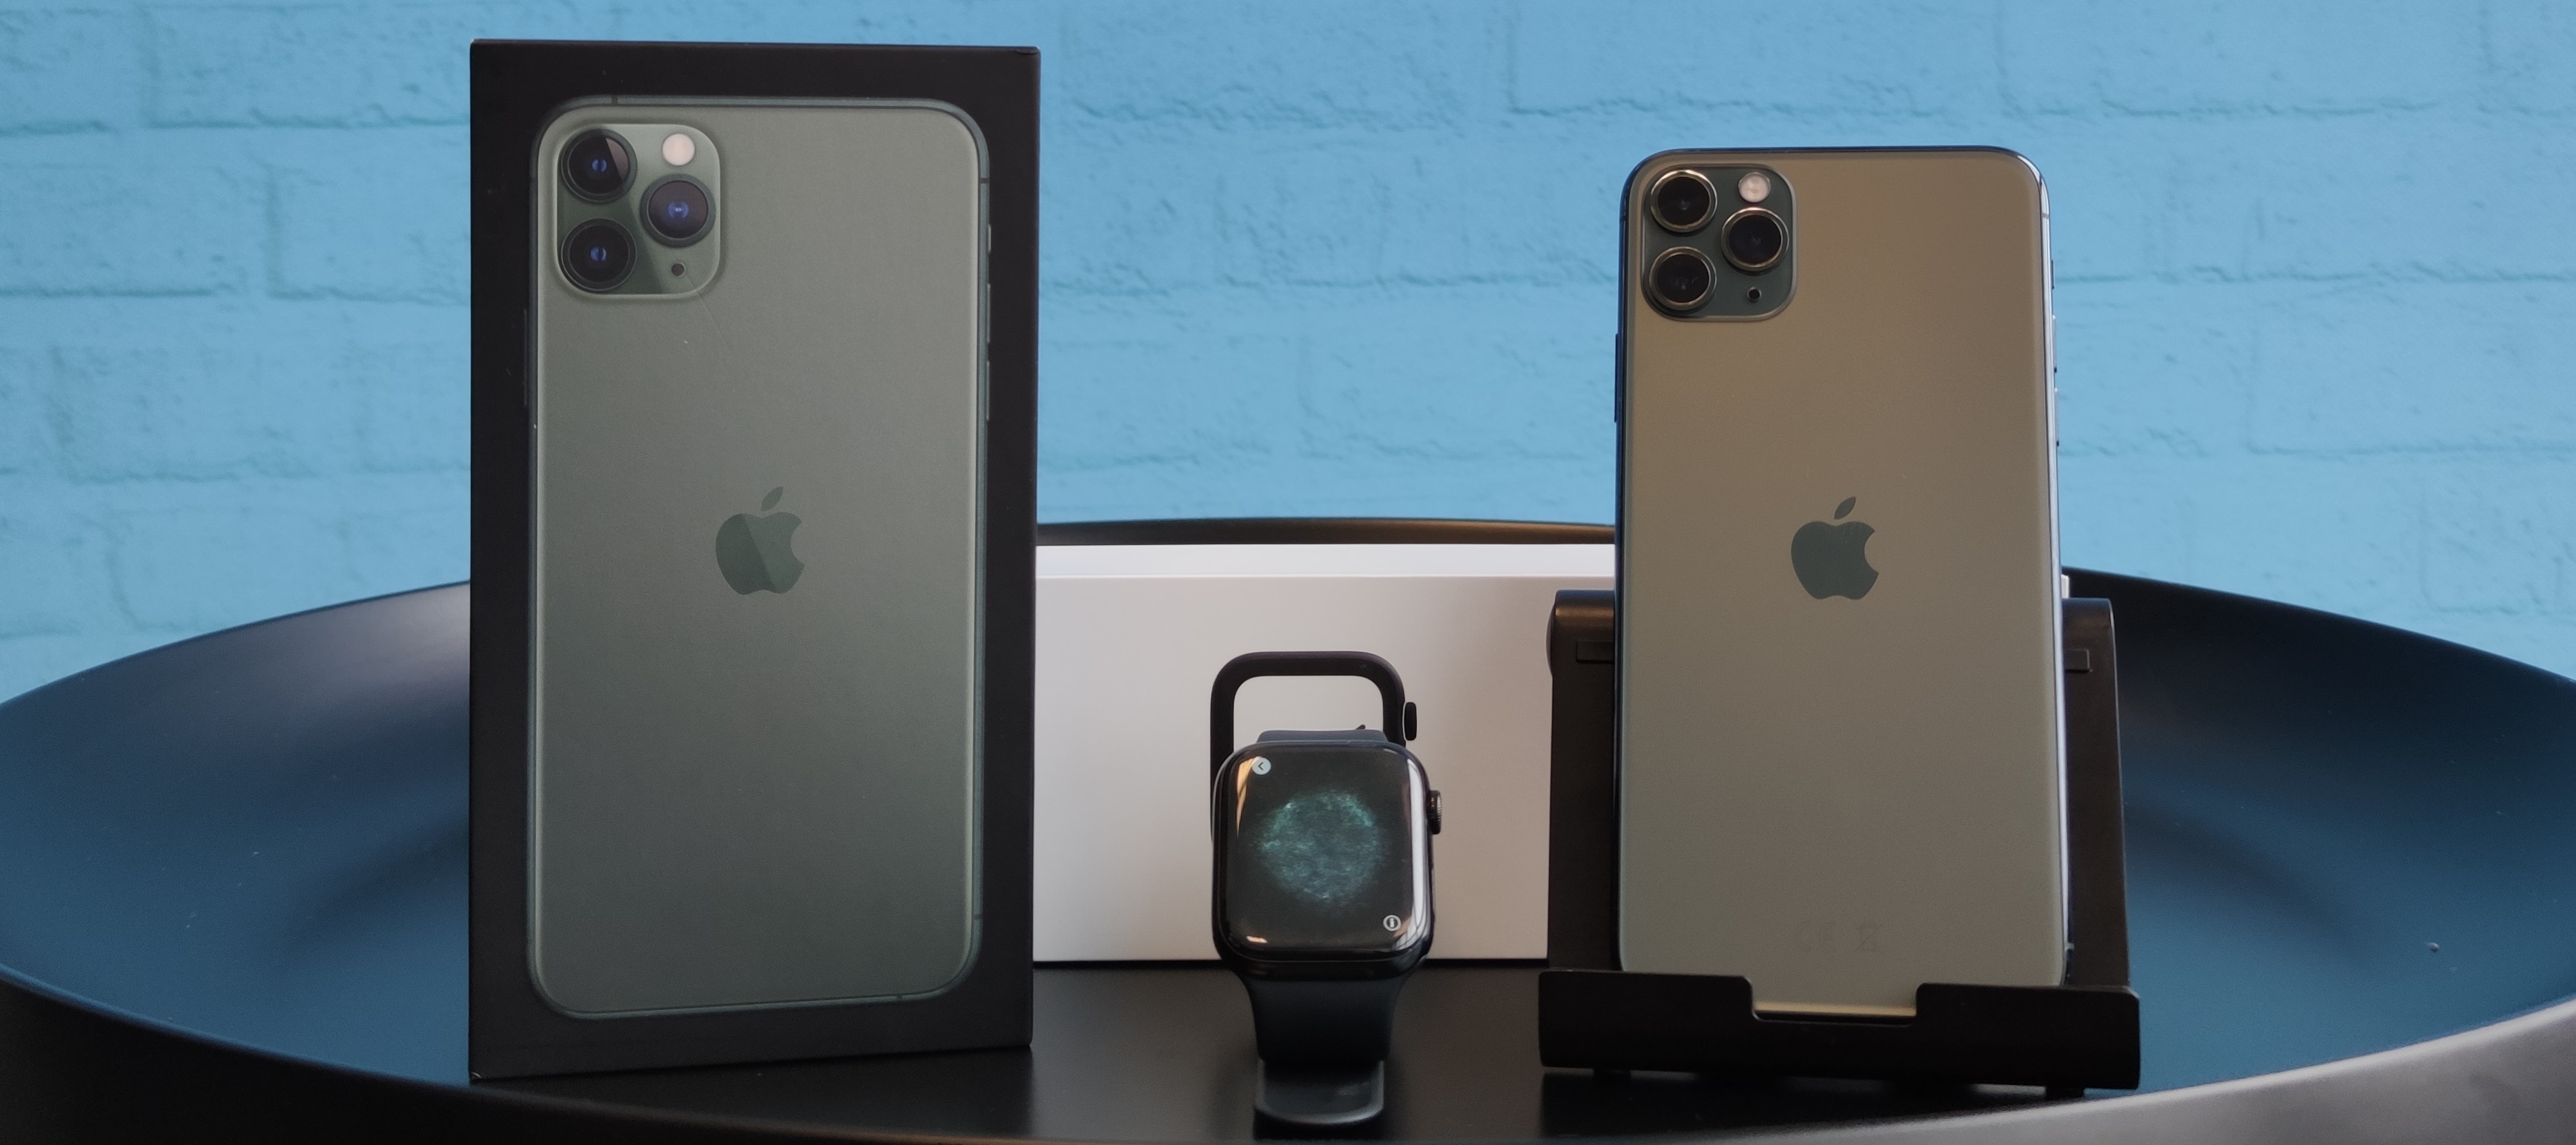 iPhone 11 Pro Max & Apple Watch S4 Testbundle: Wir schnüren für dich ein Apple Bundle zum testen - jetzt bewerben!